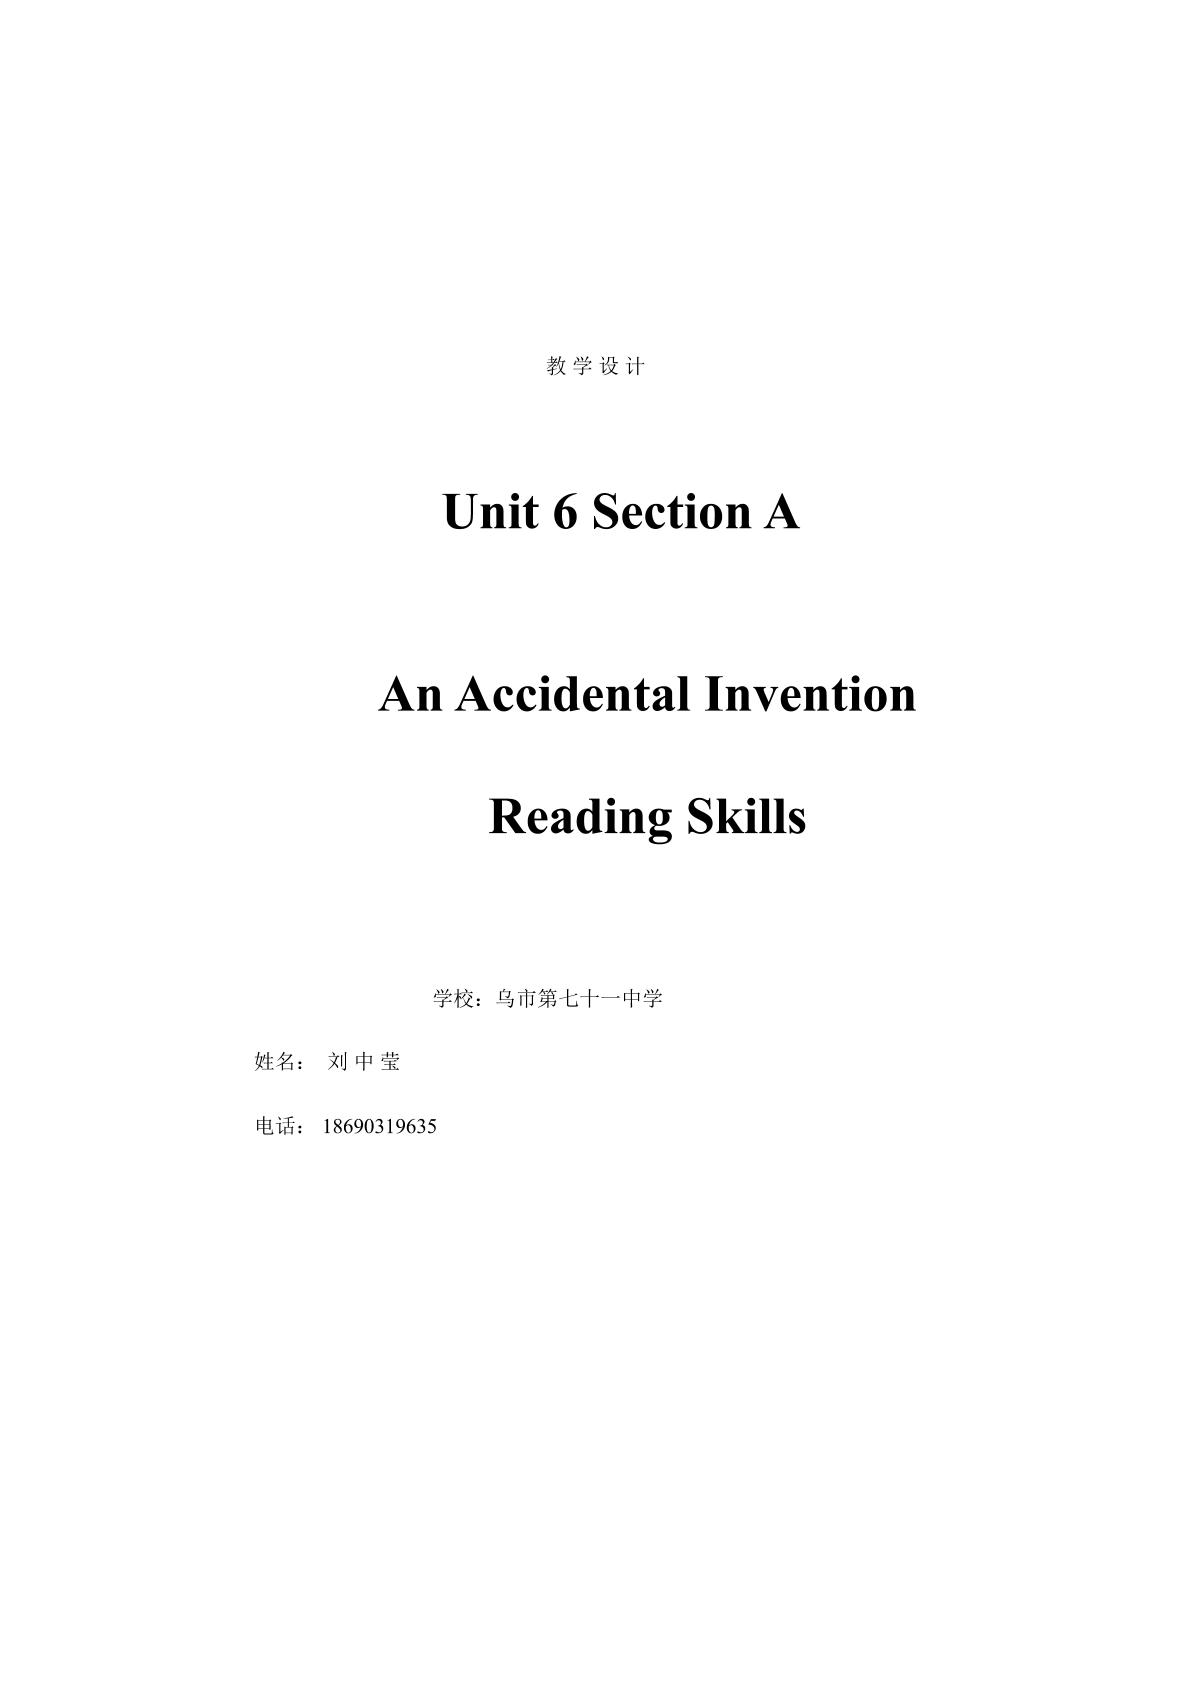 九年级Unit 6 An Accidental Invention阅读技巧